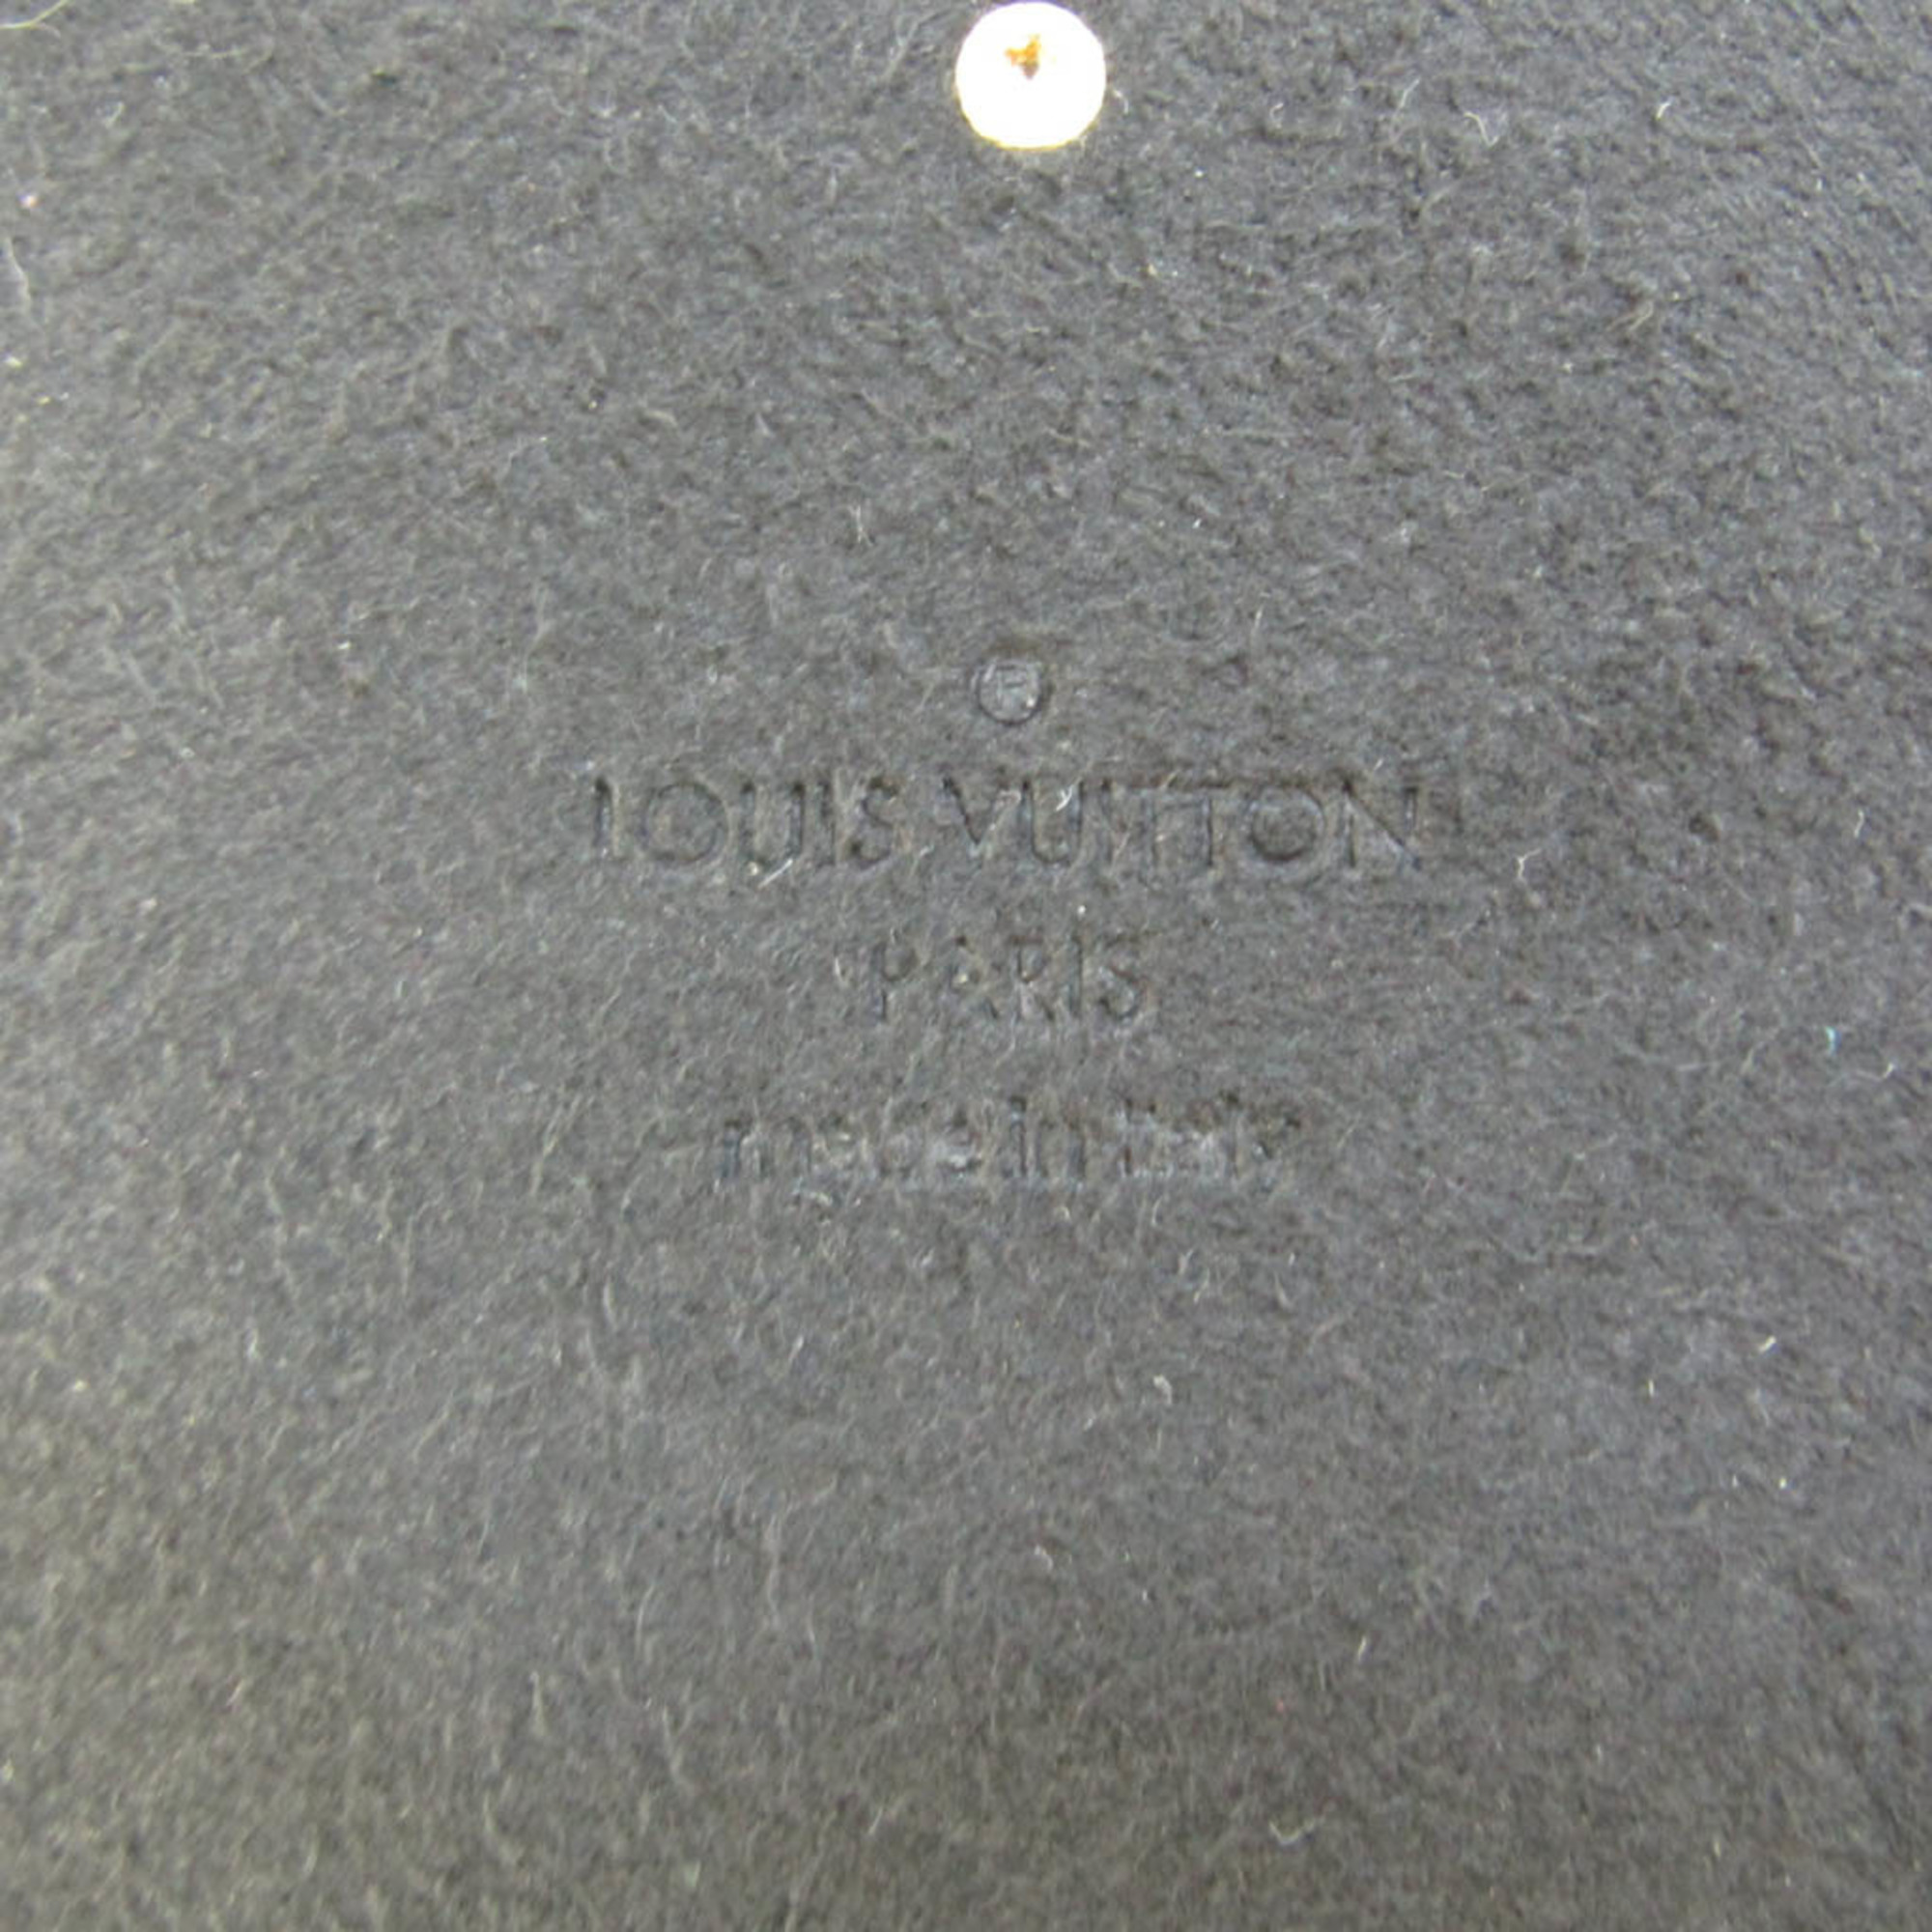 ルイ・ヴィトン(Louis Vuitton) モノグラム・リバース アイトランク IPHONE X アイフォンケース M62619 モノグラム・リバース プロテクションケース iPhone X 対応 モノグラム・リバース,ノワール